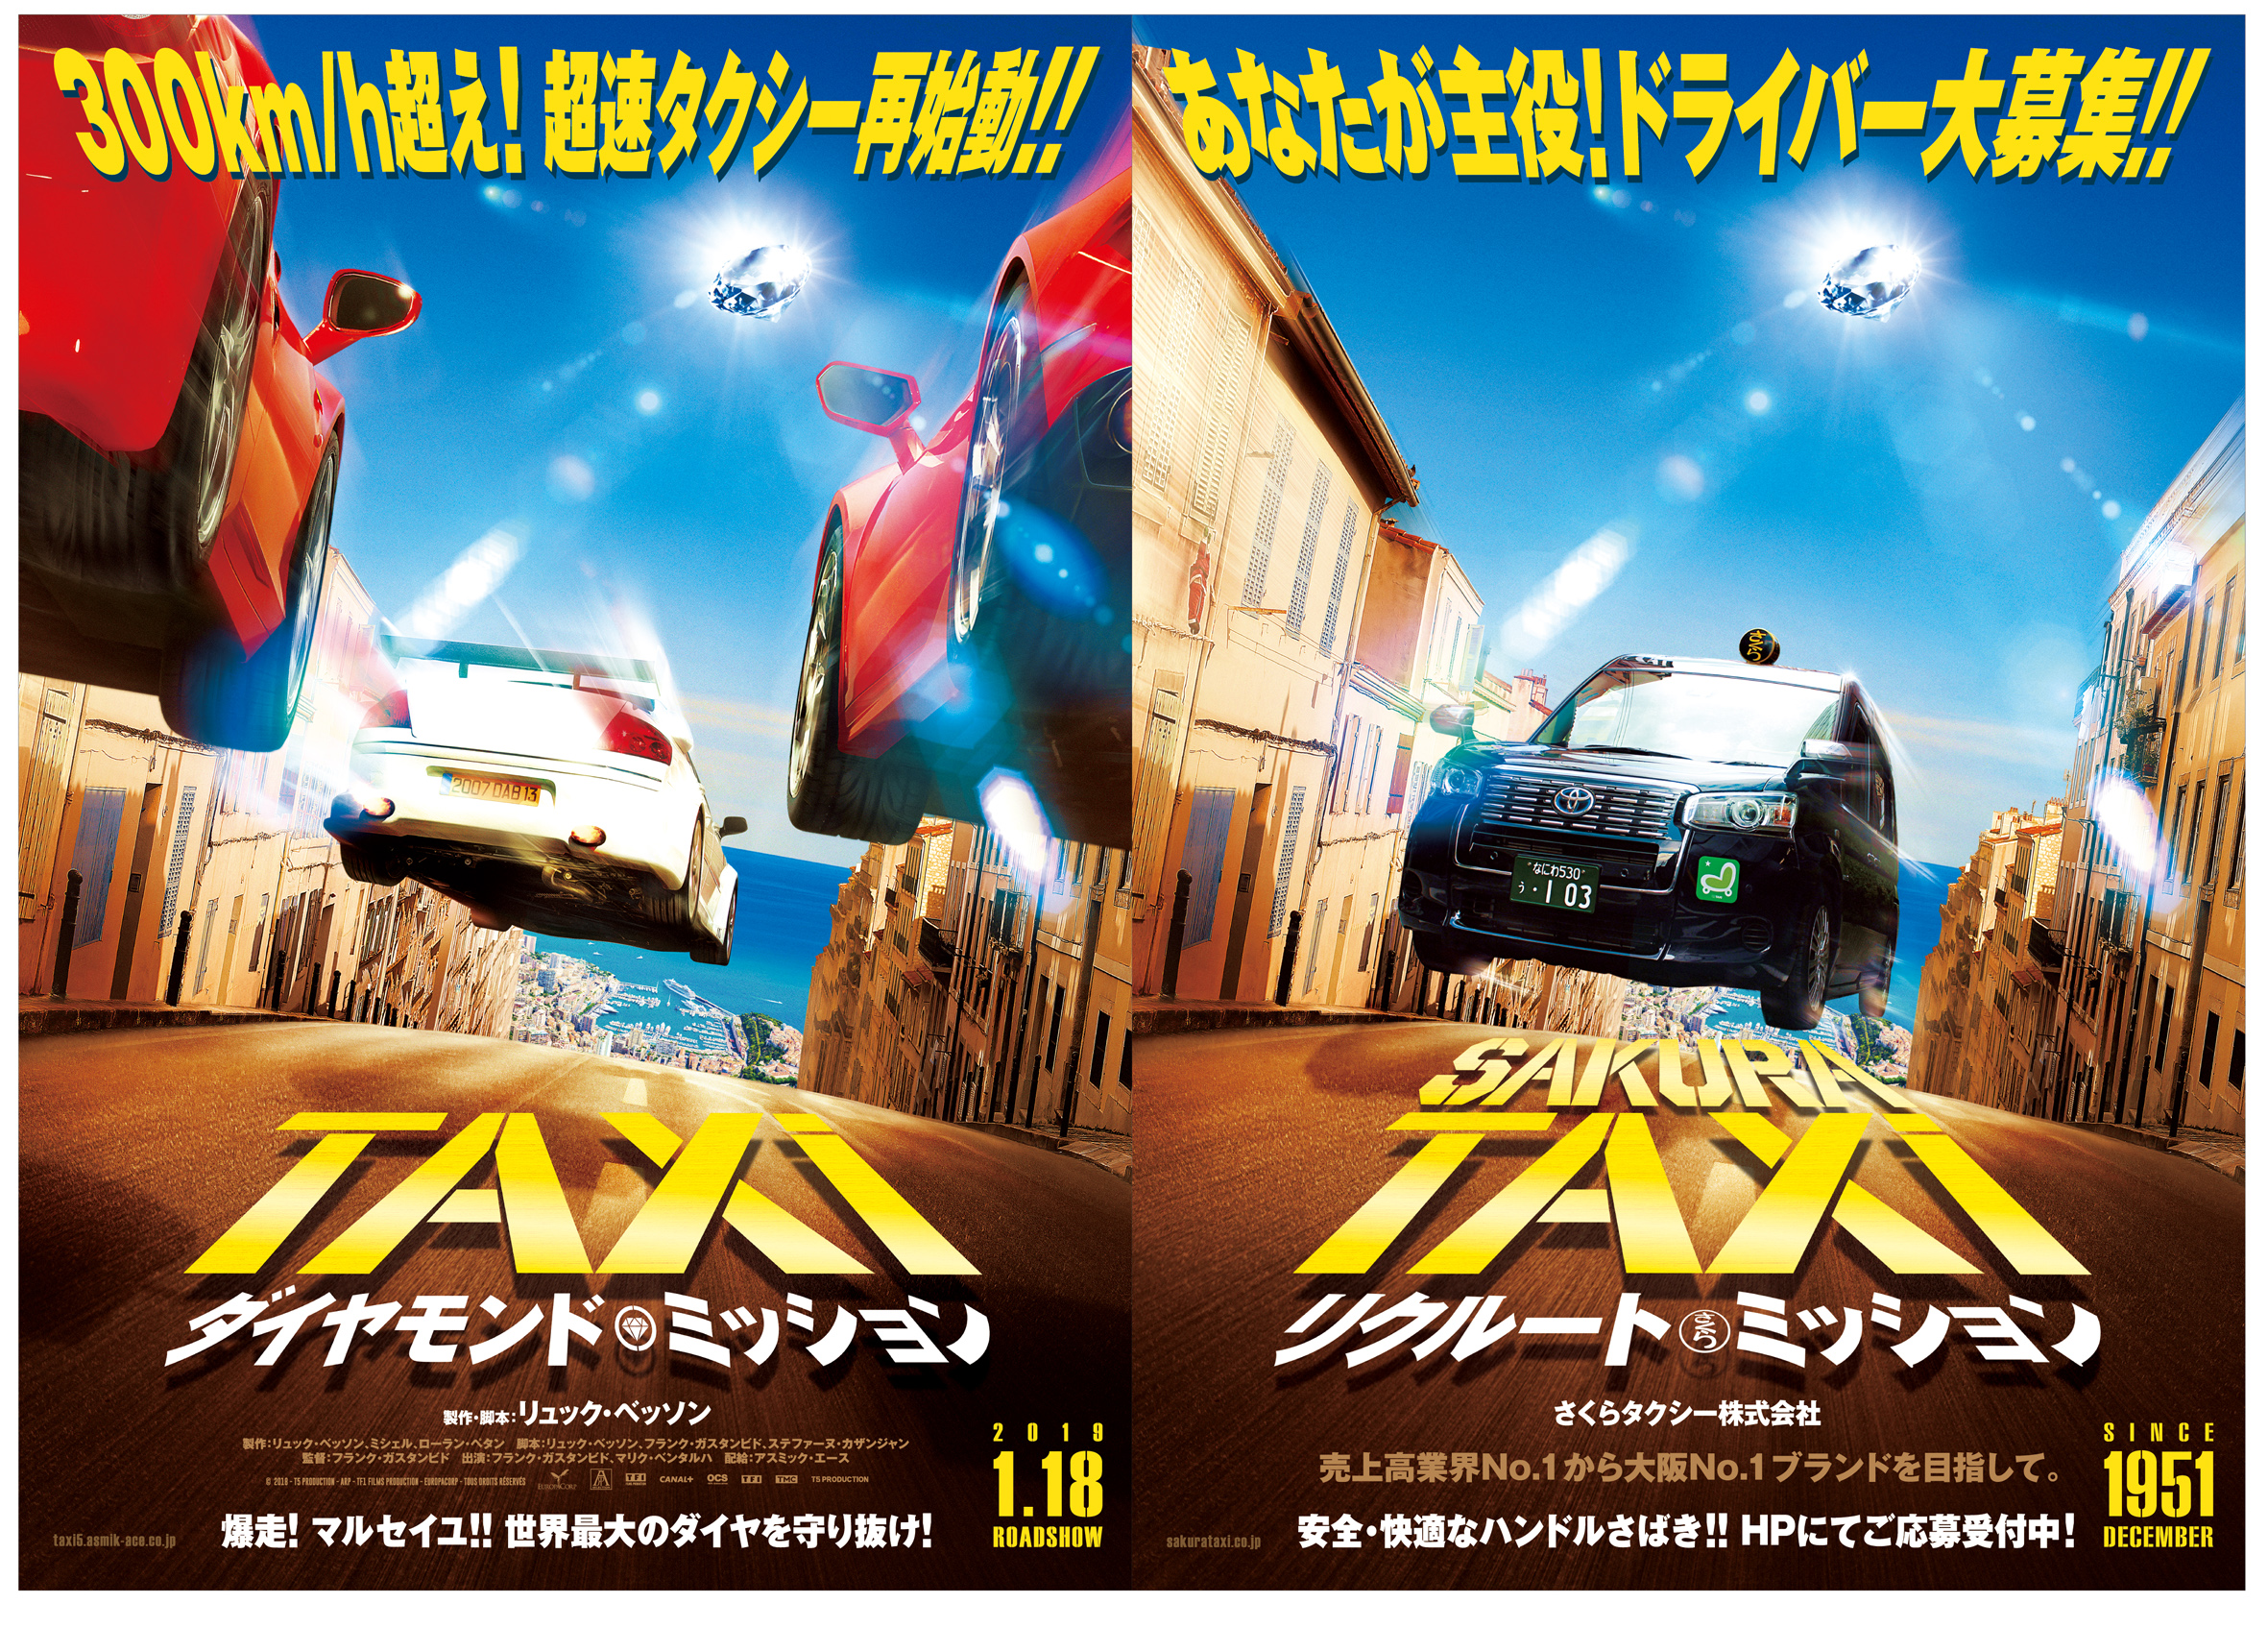 映画 Taxi ダイヤモンド ミッション 大阪 さくらタクシーとコラボ決定 さくらタクシー株式会社のプレスリリース